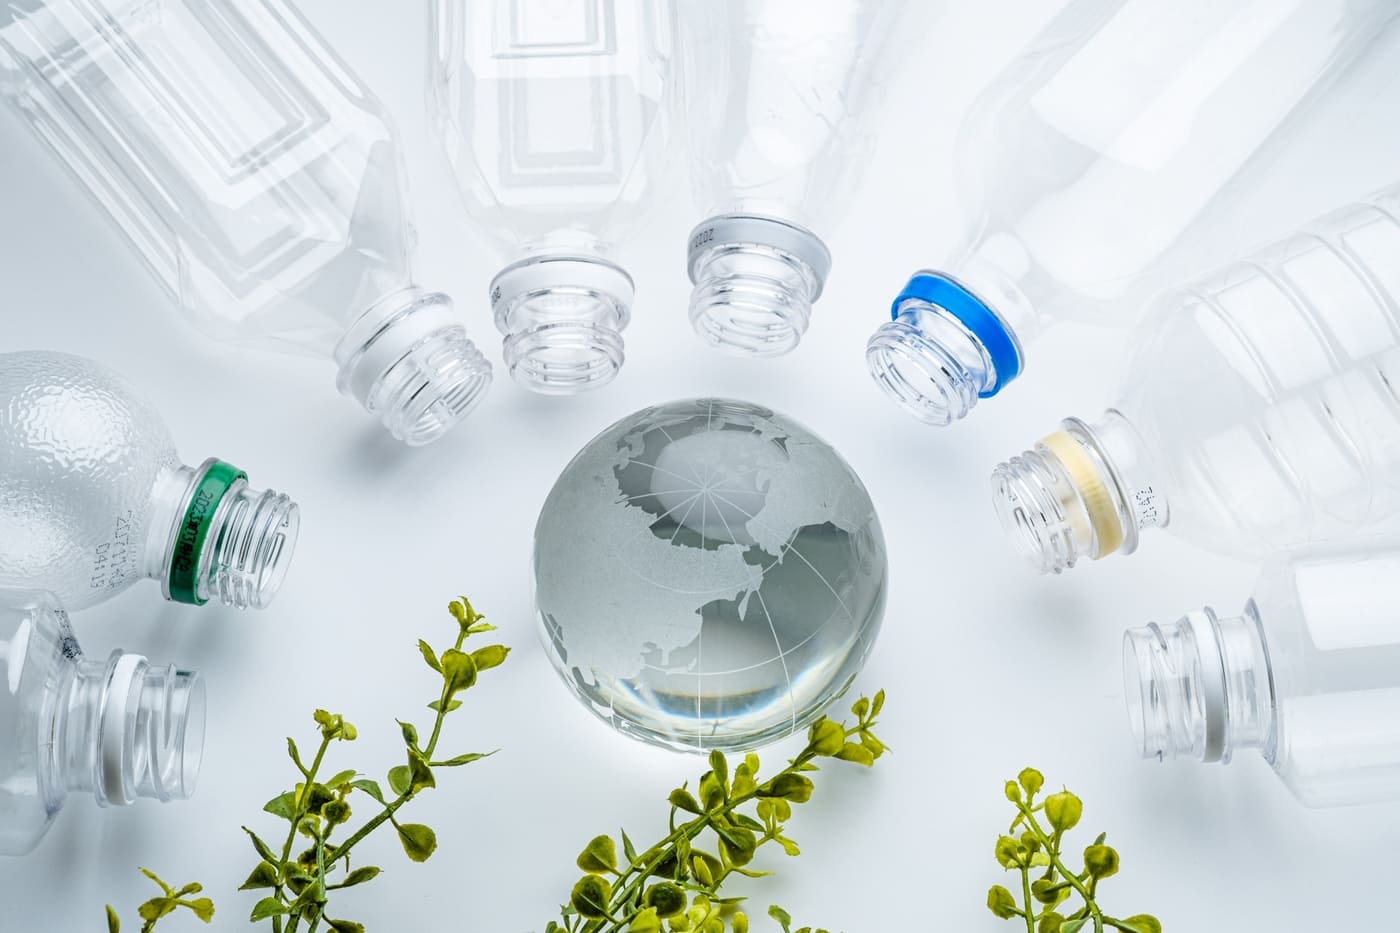 地球を囲むようにペットボトルとグリーンが置かれていて、生分解性プラスチックを表現しているイメージ画像